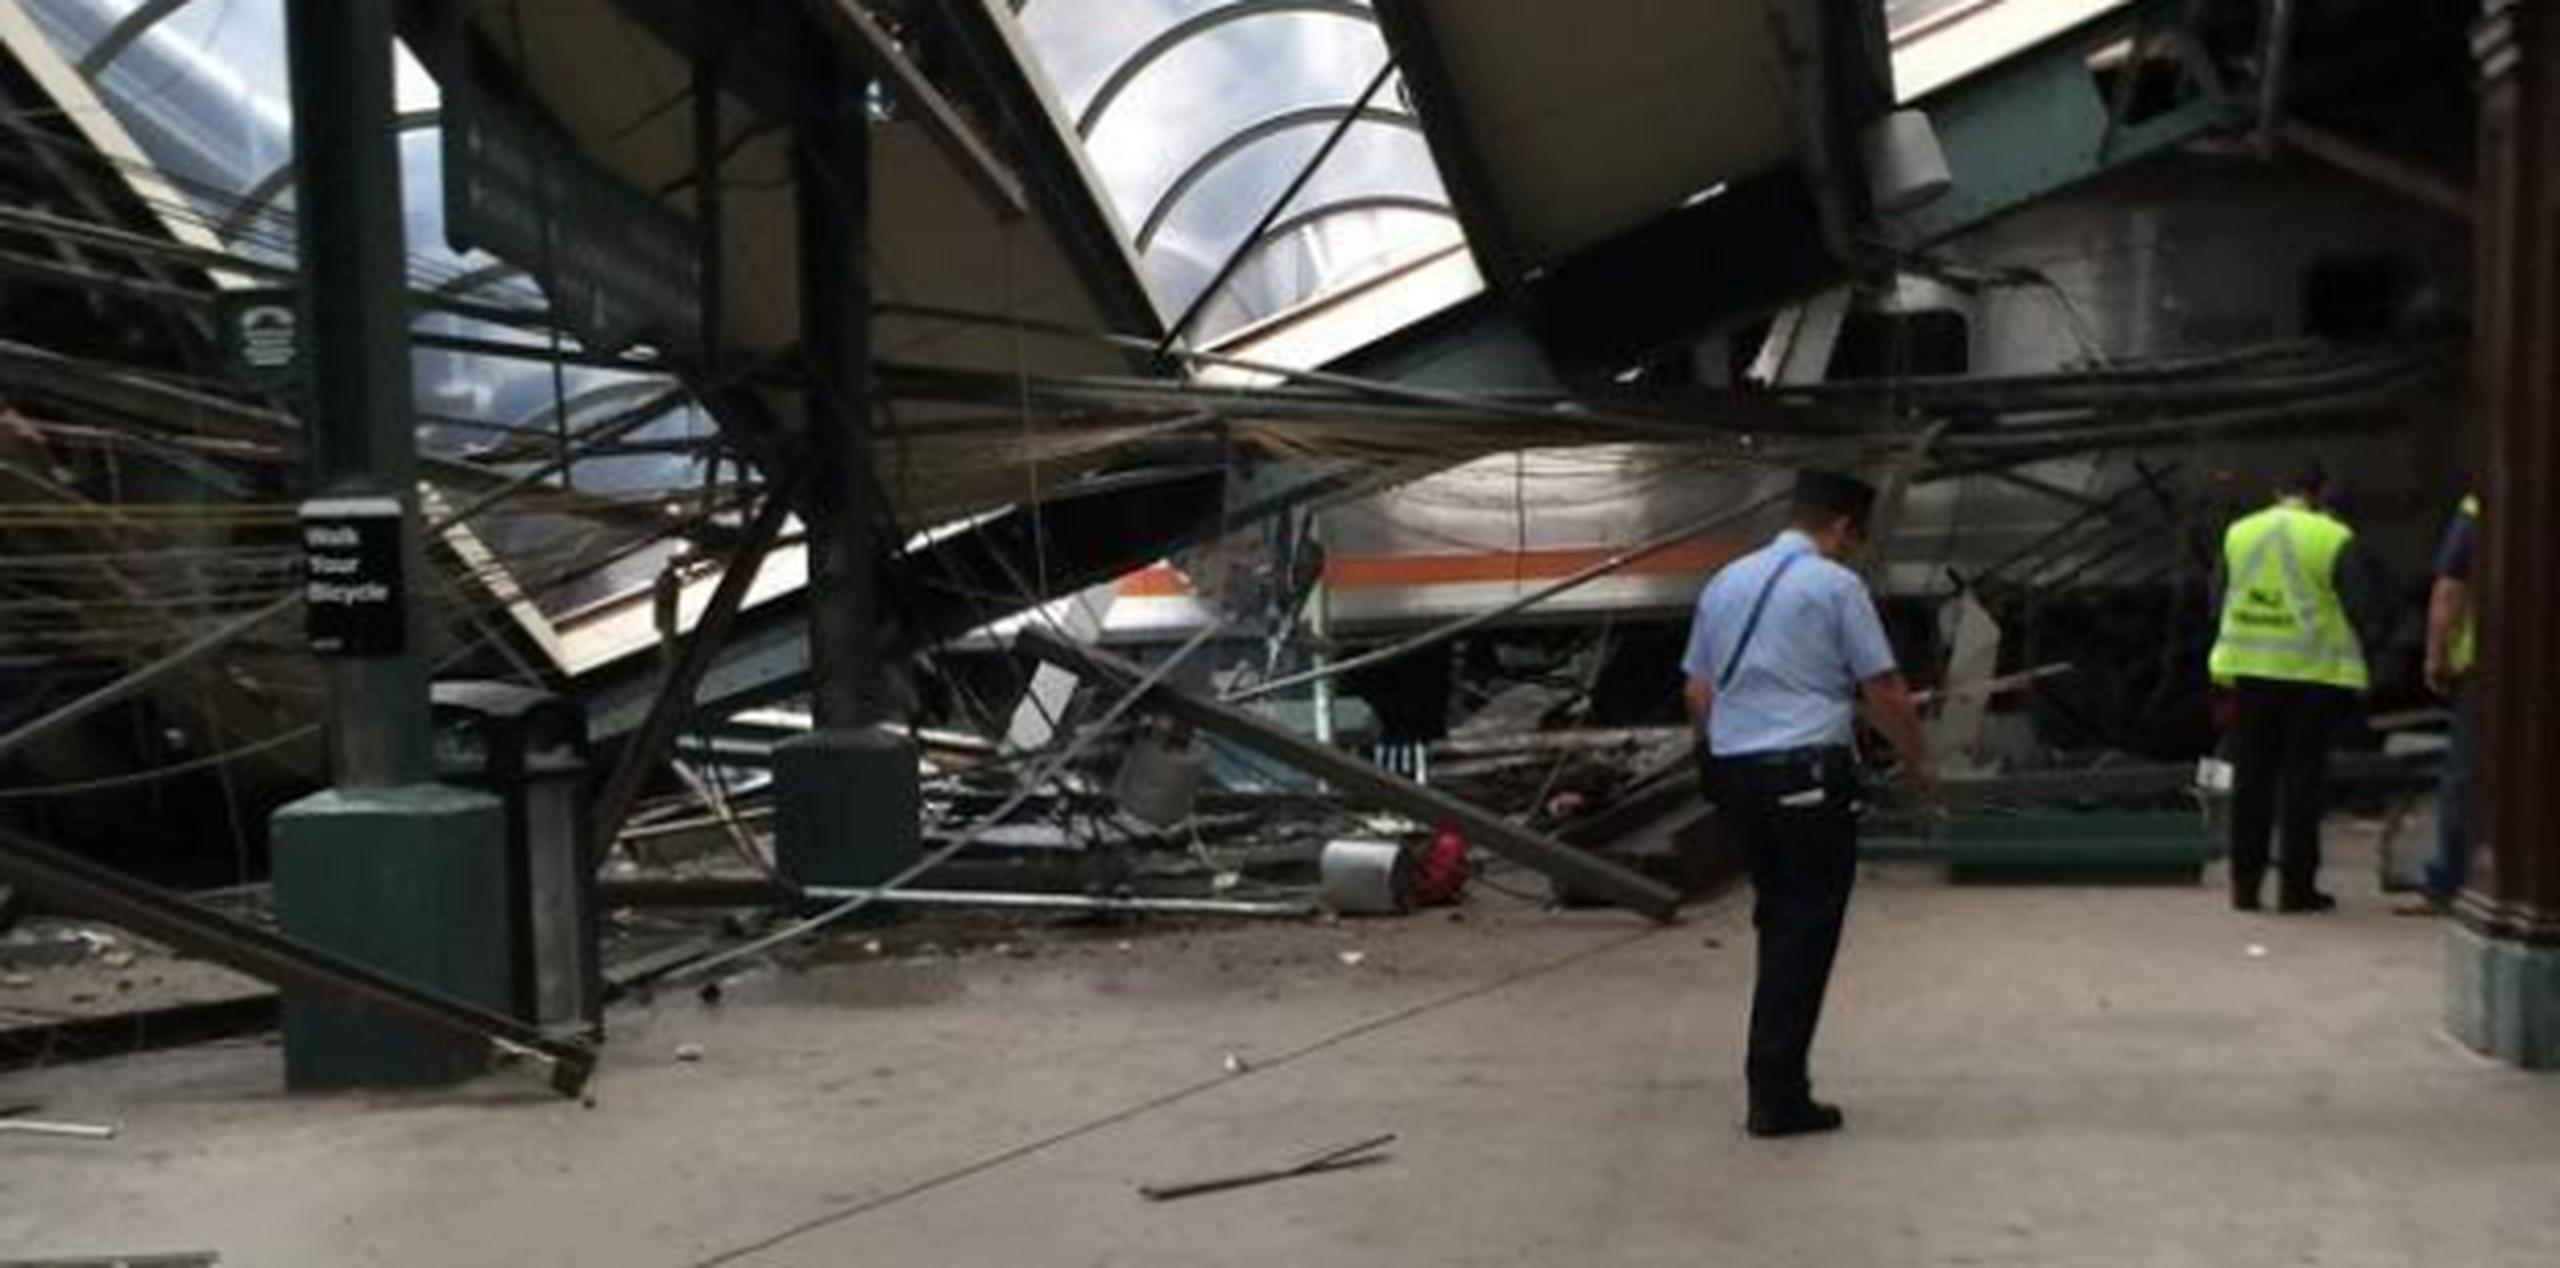 Hay extensos daños en la estación de Hoboken, Nueva Jersey, donde ocurrió el accidente de tren esta mañana. (AP)